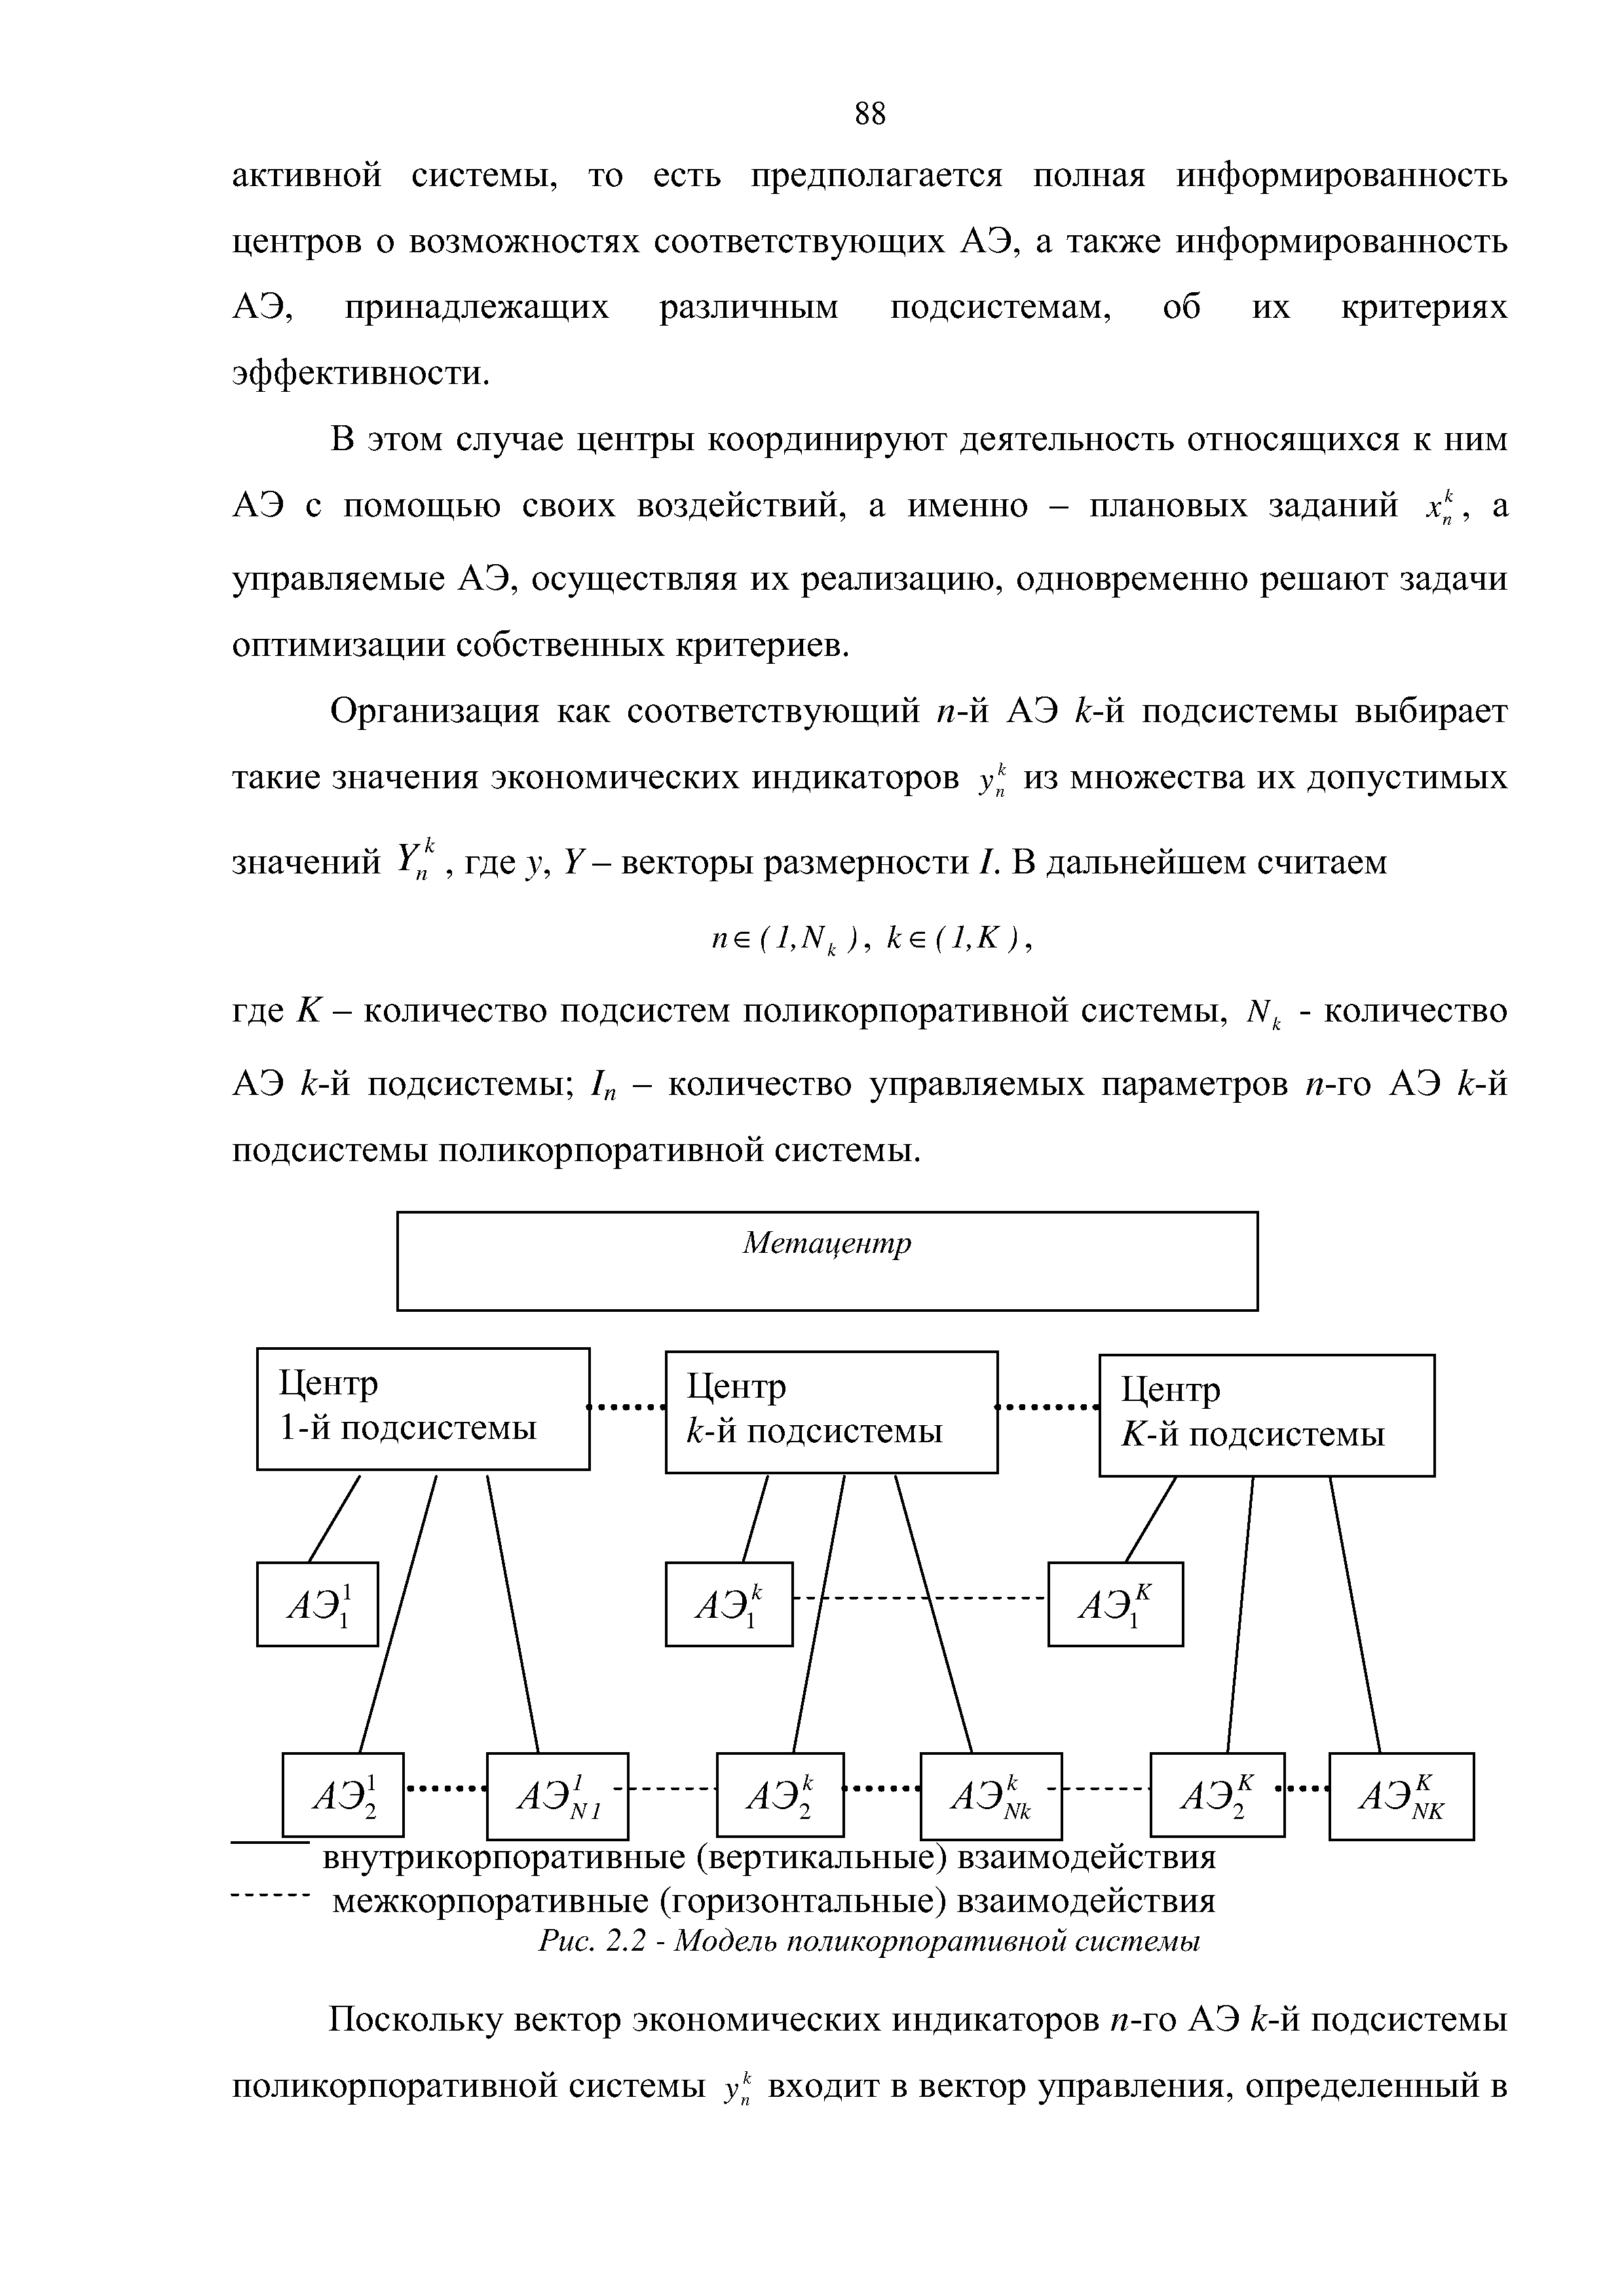 АЭ k-и подсистемы / - количество управляемых параметров п-то АЭ k-и подсистемы поликорпоративной системы.
